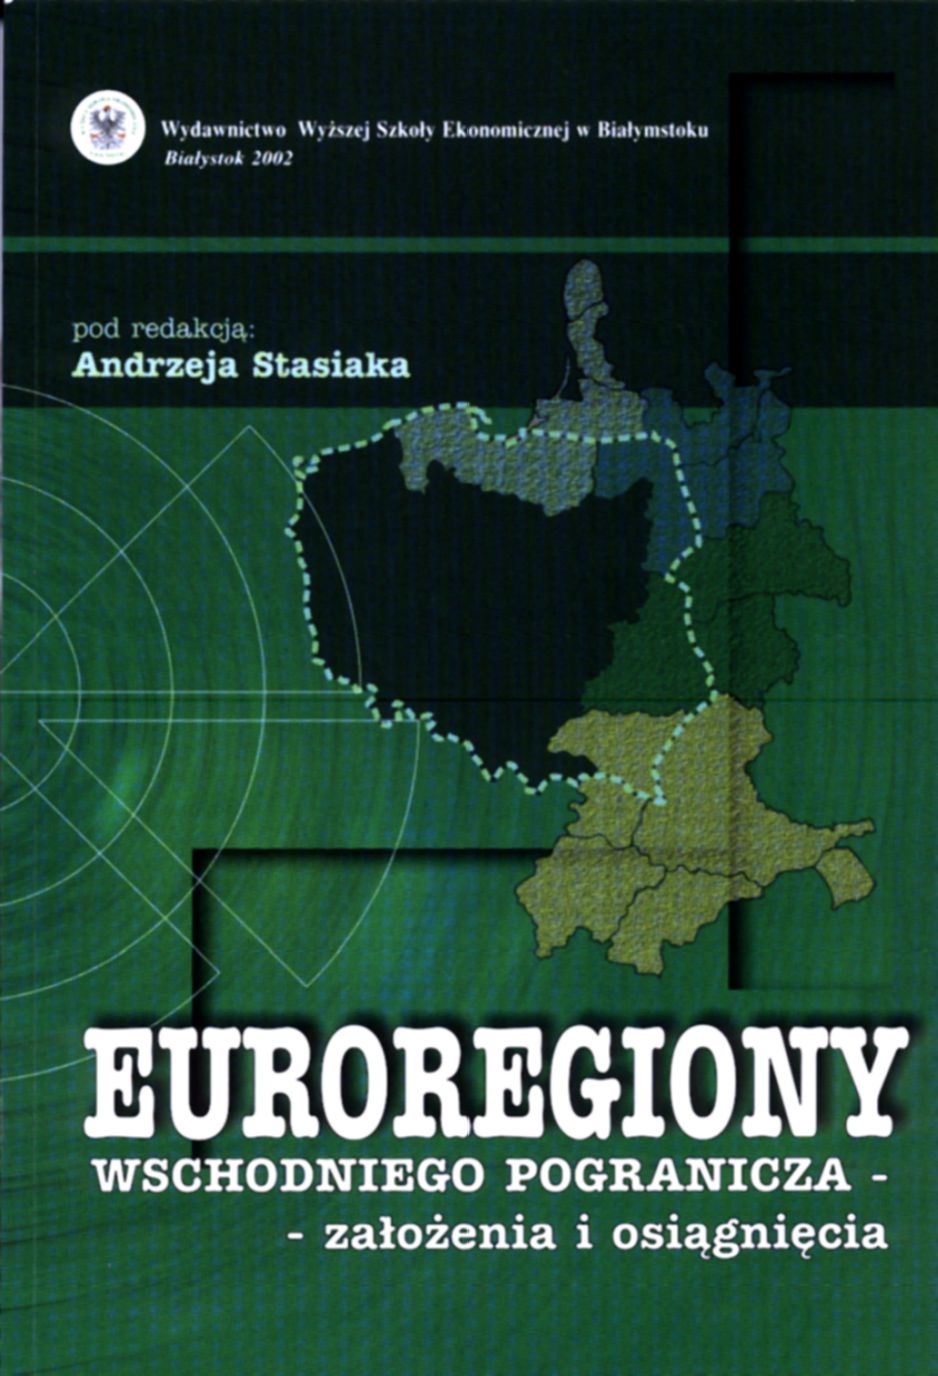 Euroregiony wschodniego pogranicza- założenia i osiągnięcia